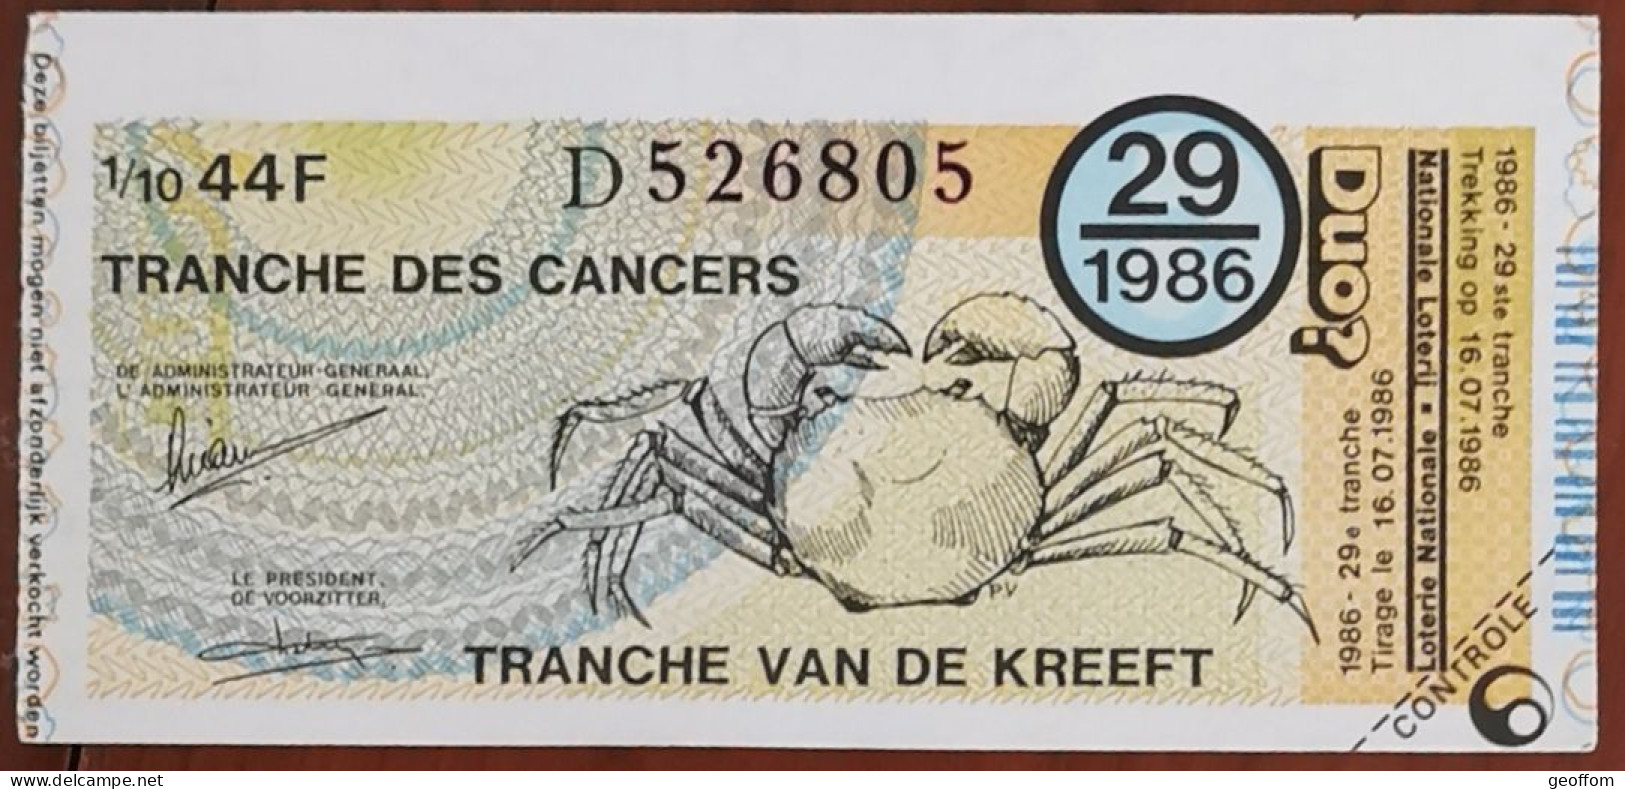 Billet De Loterie Nationale Belgique 1986 29e Tranche Des Cancers - 16-7-1986 - Billetes De Lotería